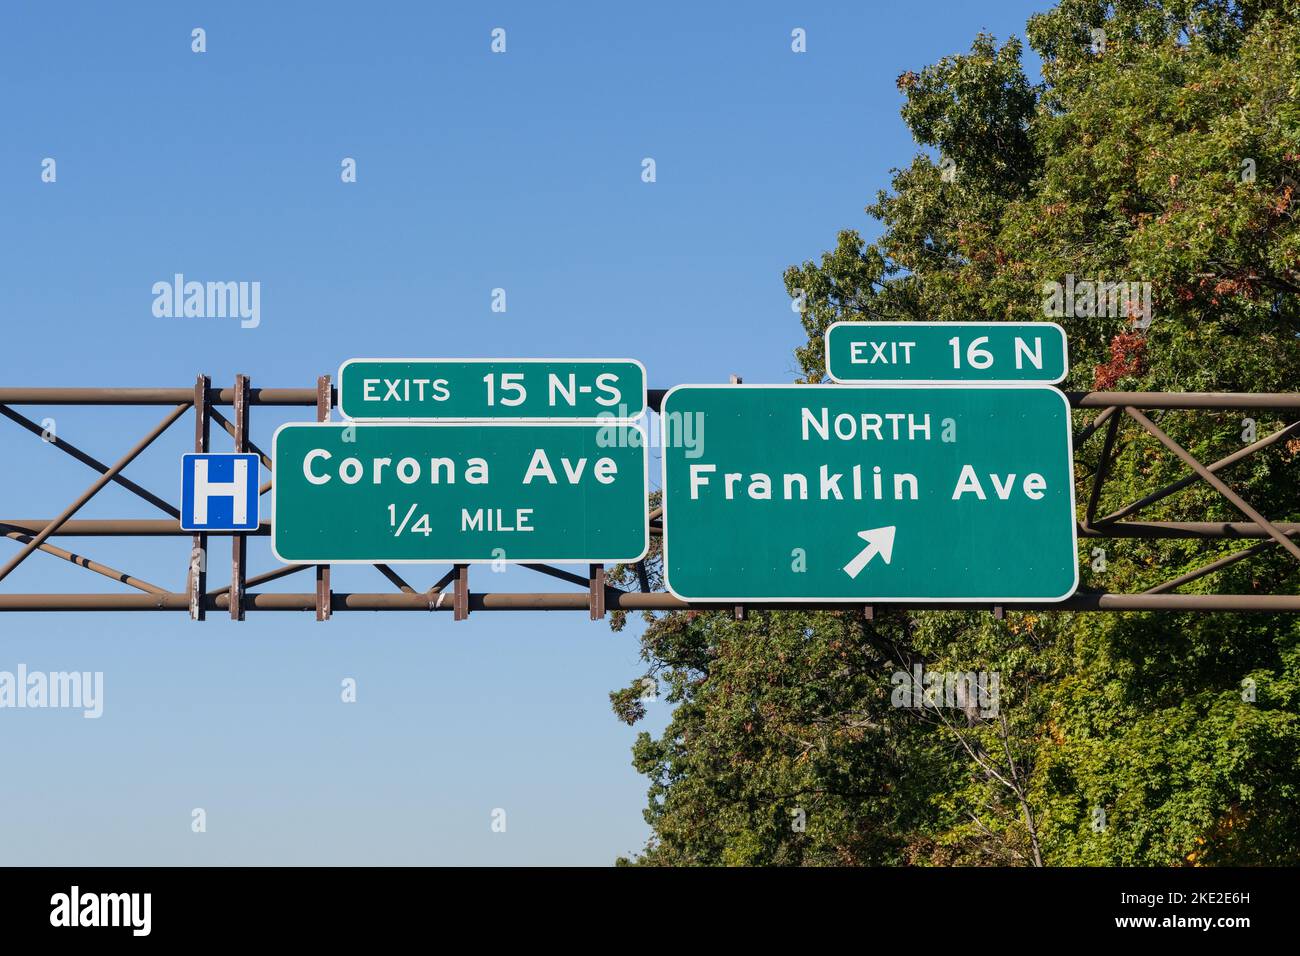 Prenez la sortie Southern State Parkway sur long Island, New York pour 15 N-S Corona Ave et 16N North Franklin Ave avec le panneau H bleu indiquant un hosit Banque D'Images